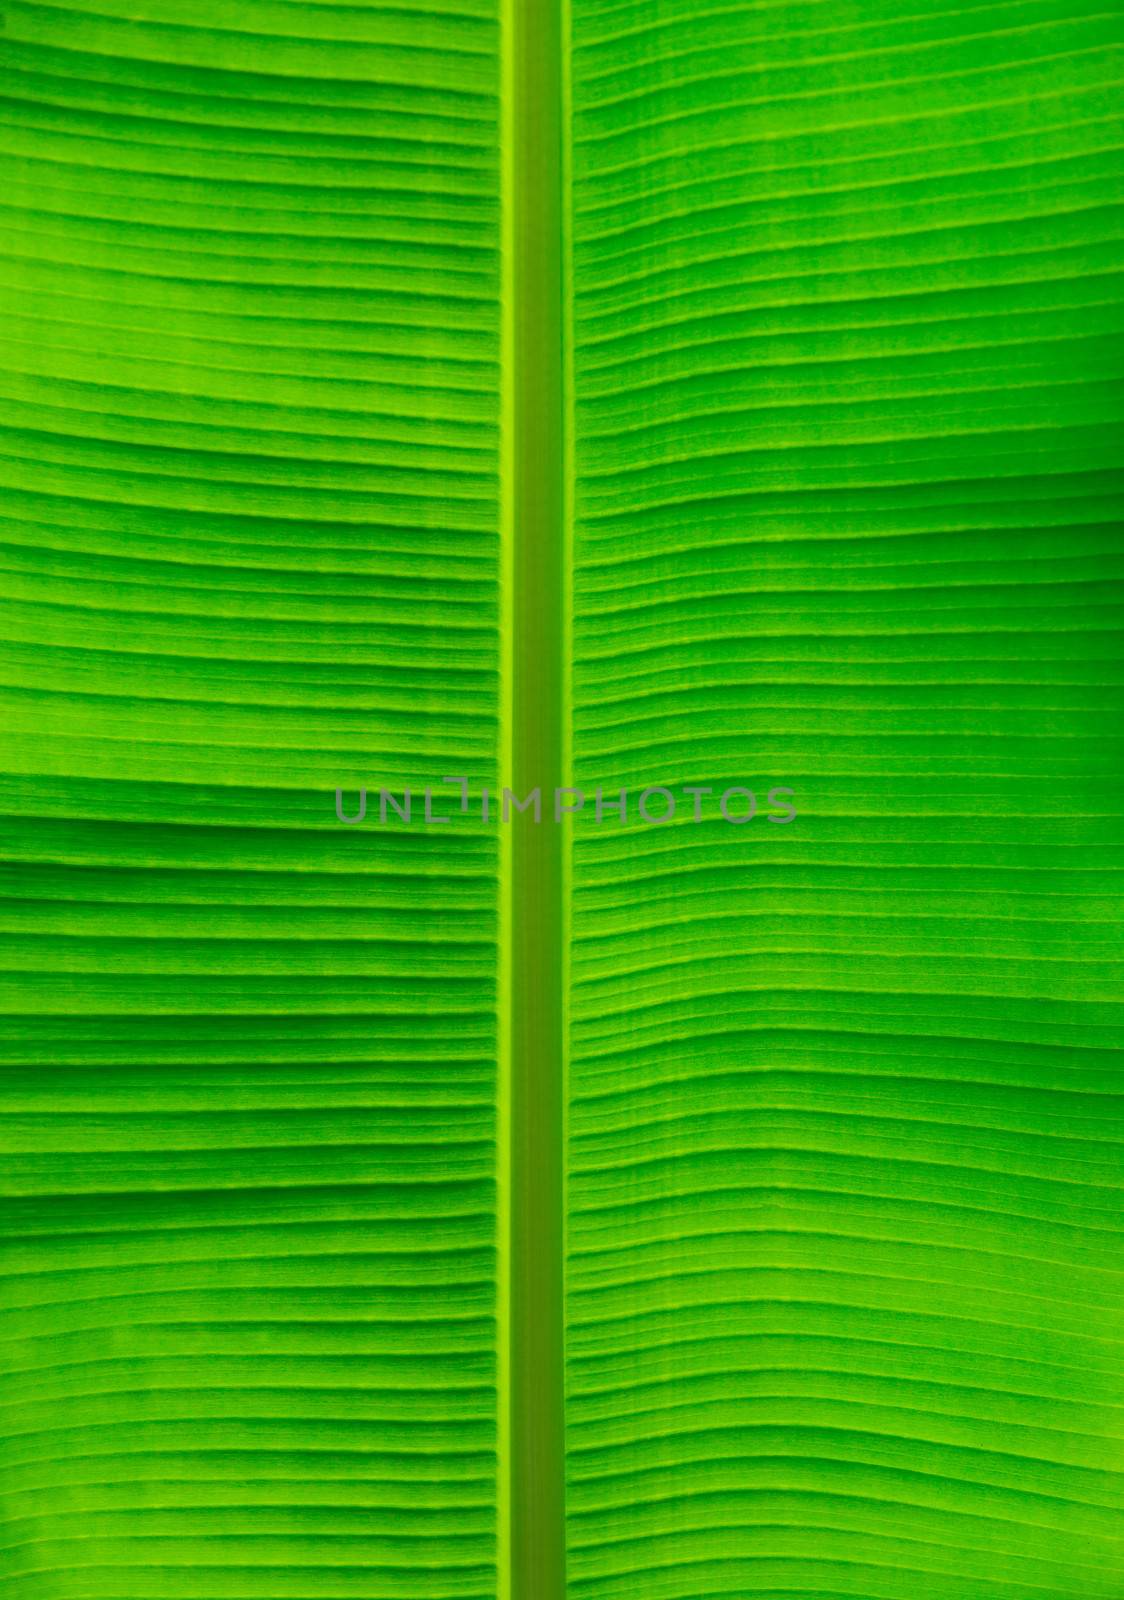  leaf texture  by Pakhnyushchyy